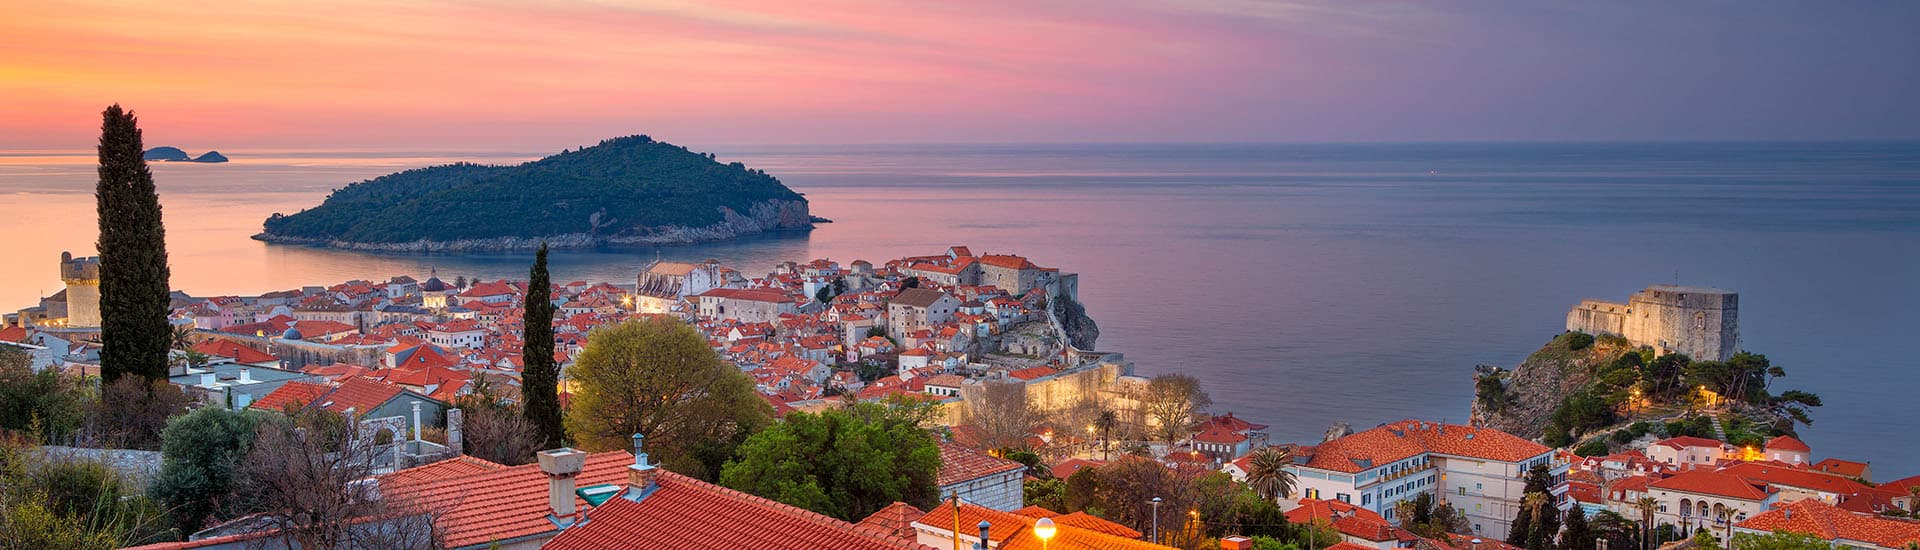 Dubrovnik-Croatia.-Beautiful-romantic-old-town-of-Dubrovnik-during-sunrise